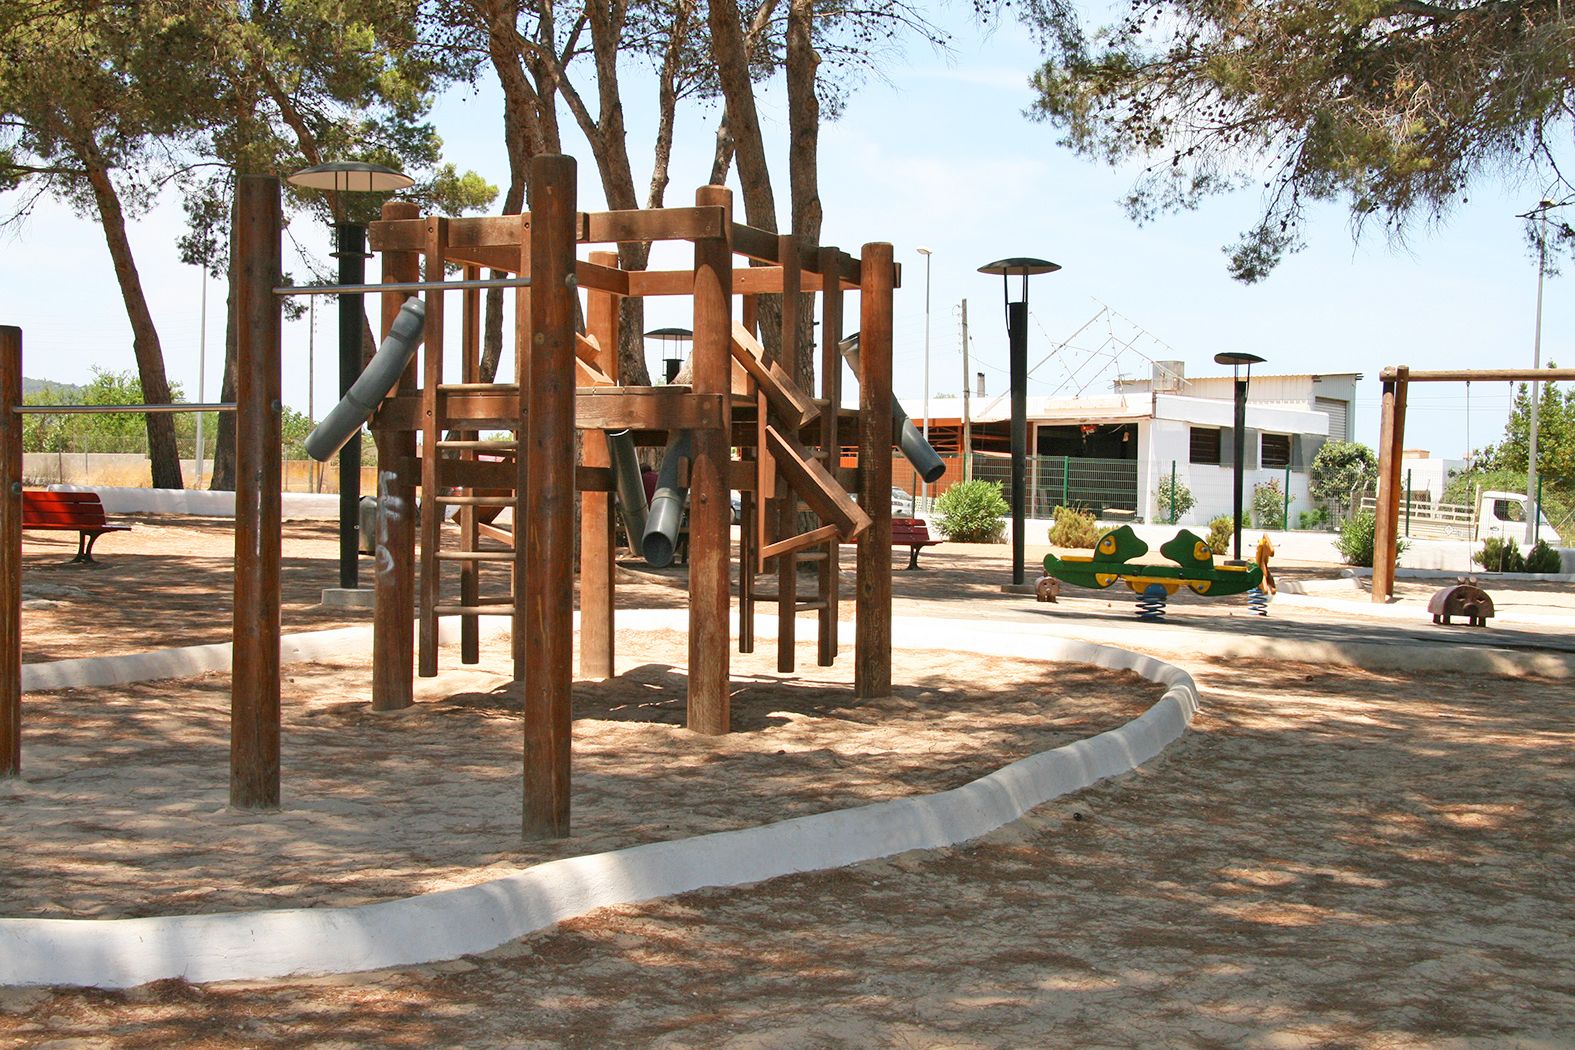 Parque infantil des Puig d'en Valls